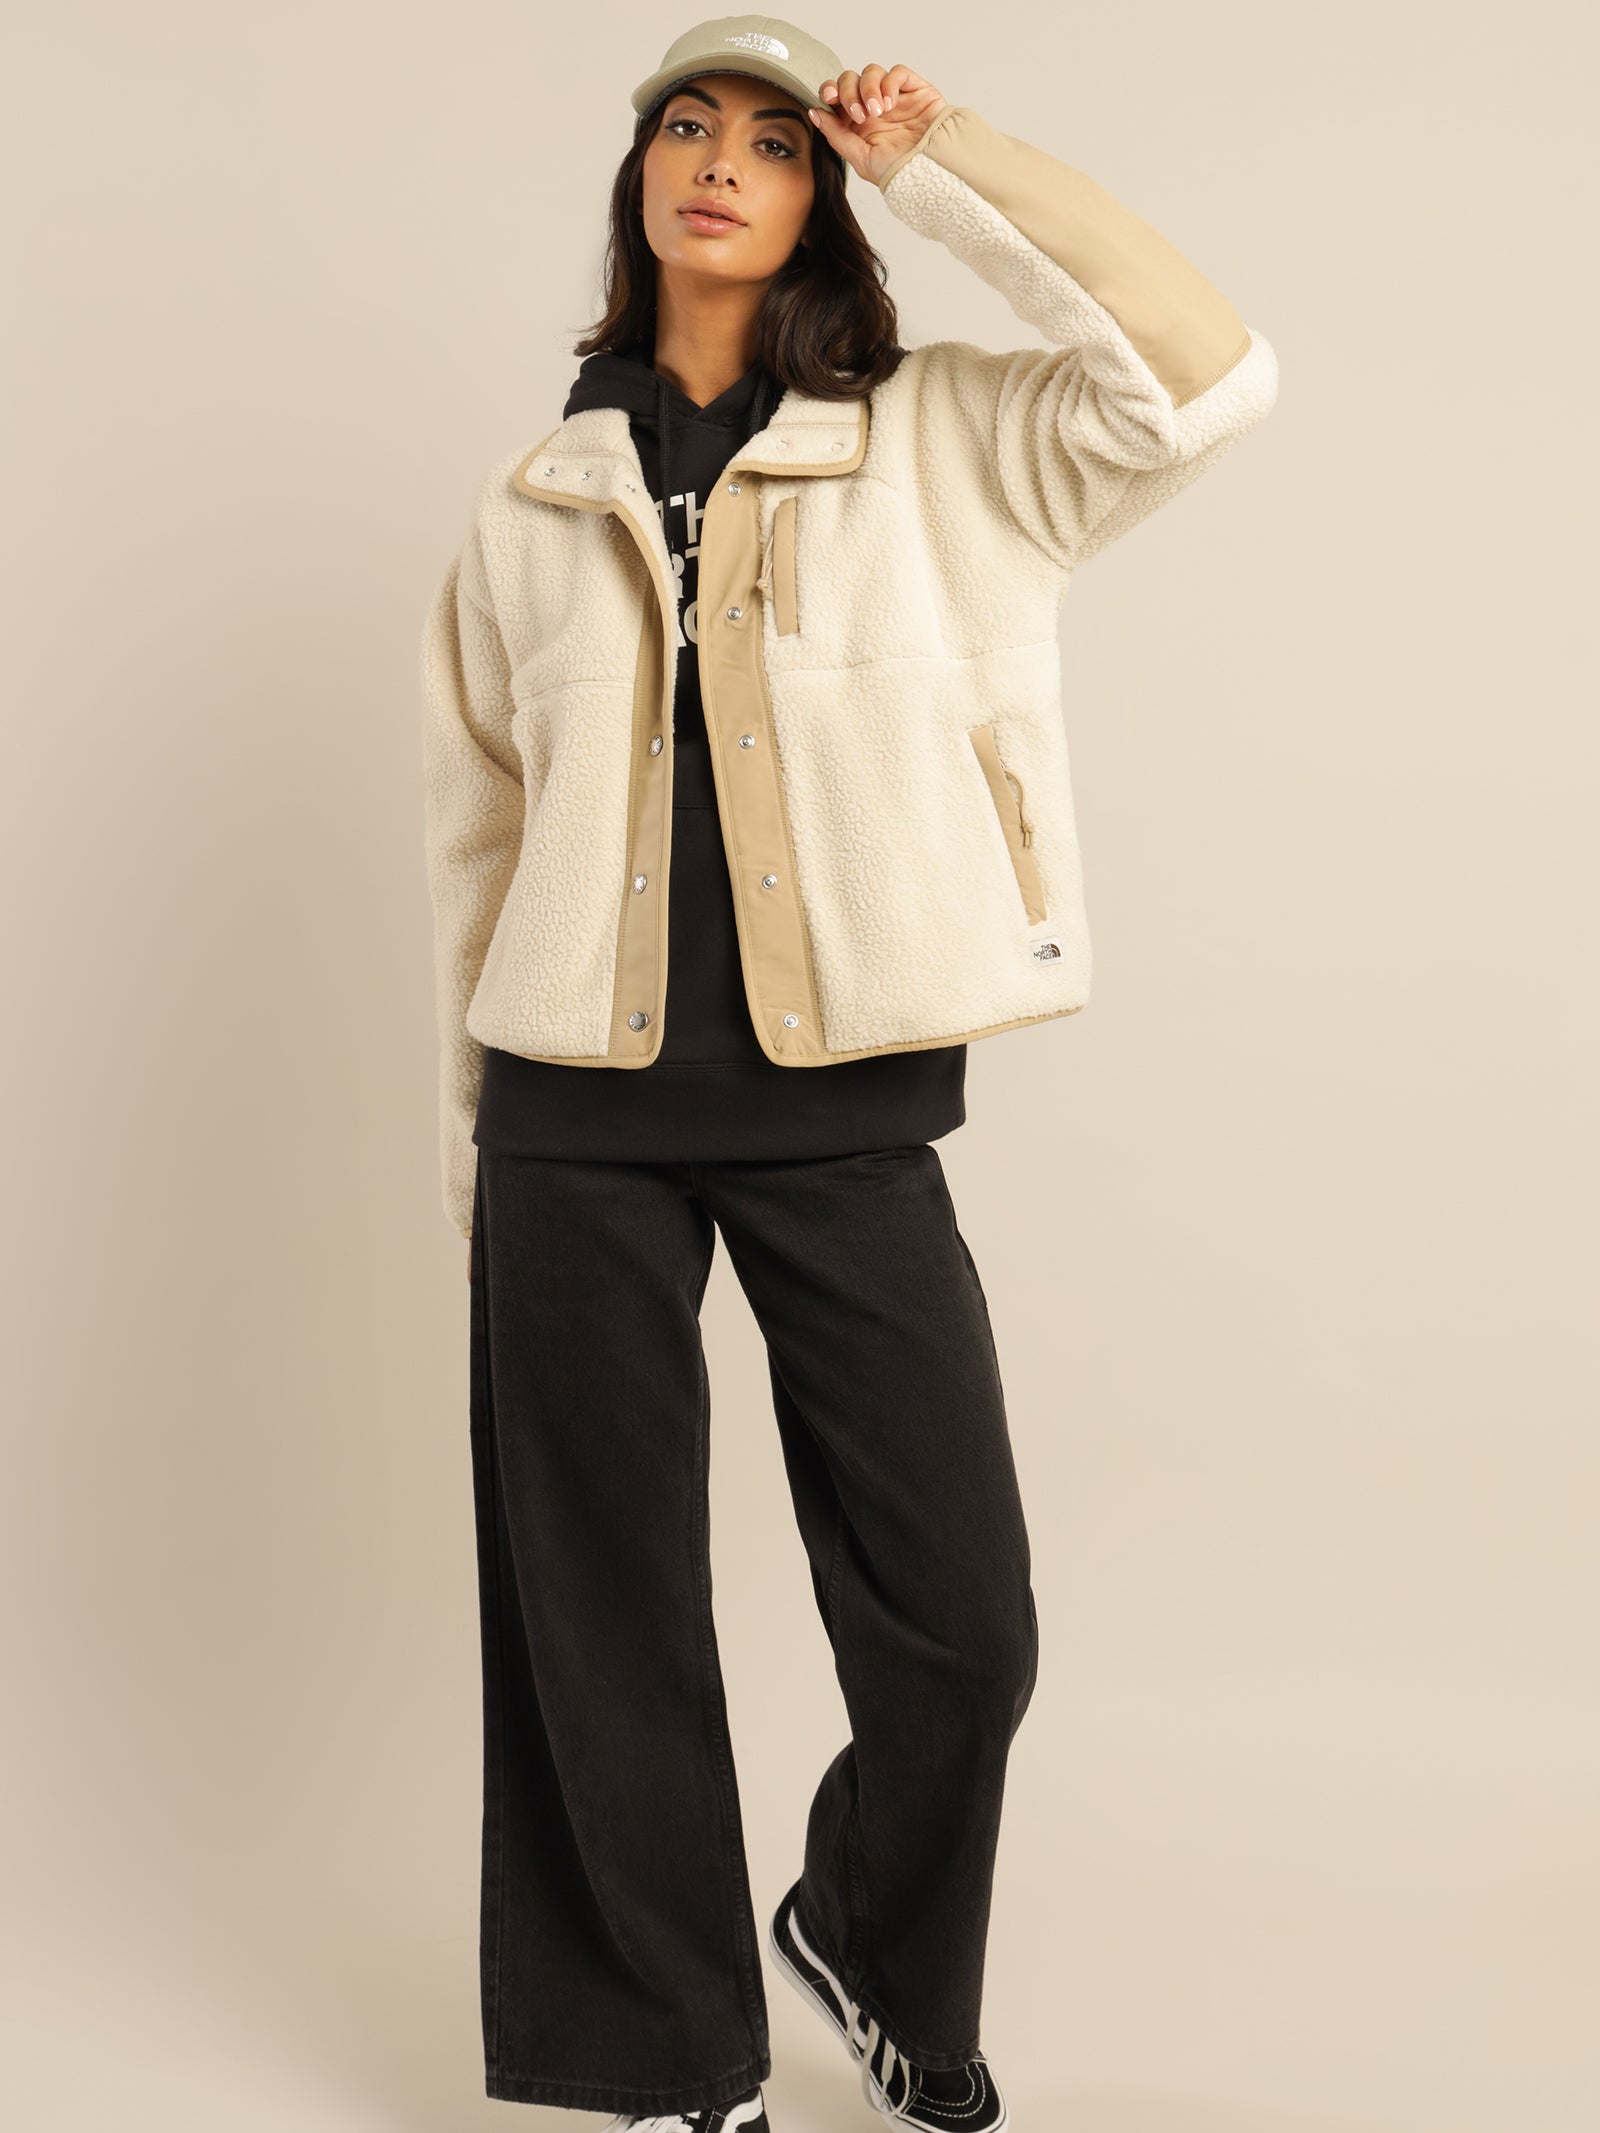 Women's Cragmont Fleece Jacket Premier Outdoor Apparel,, 46% OFF